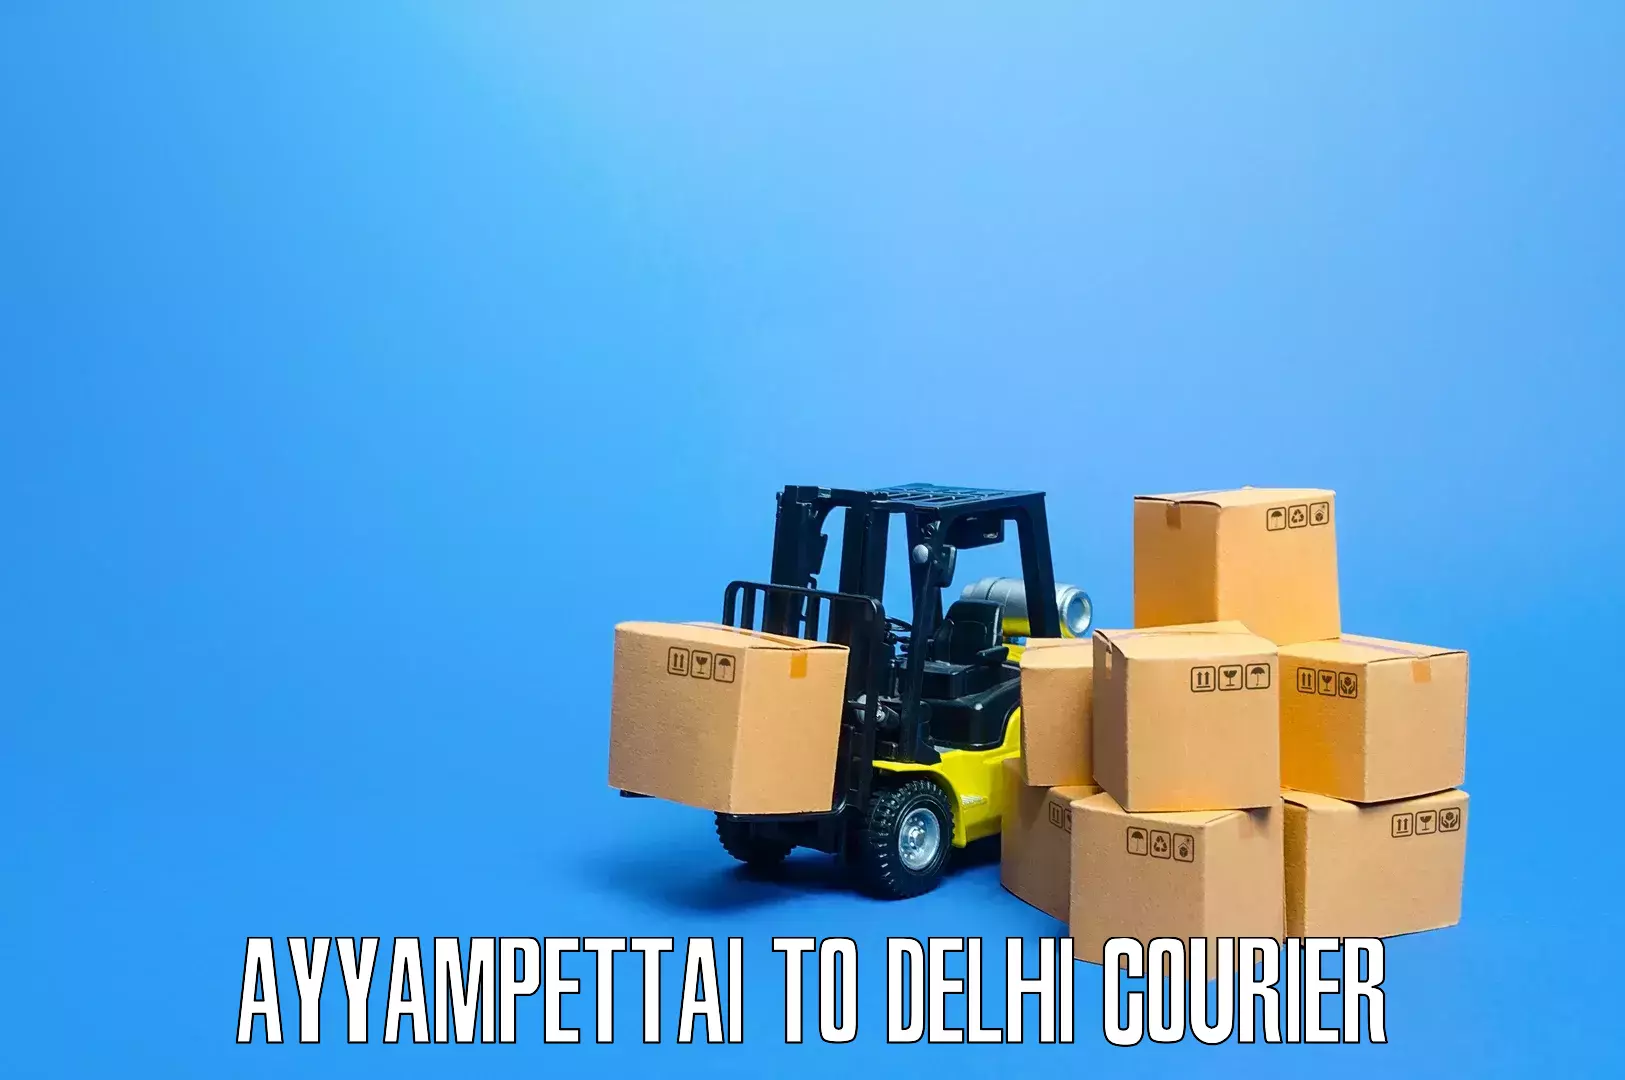 Efficient furniture transport Ayyampettai to Lodhi Road